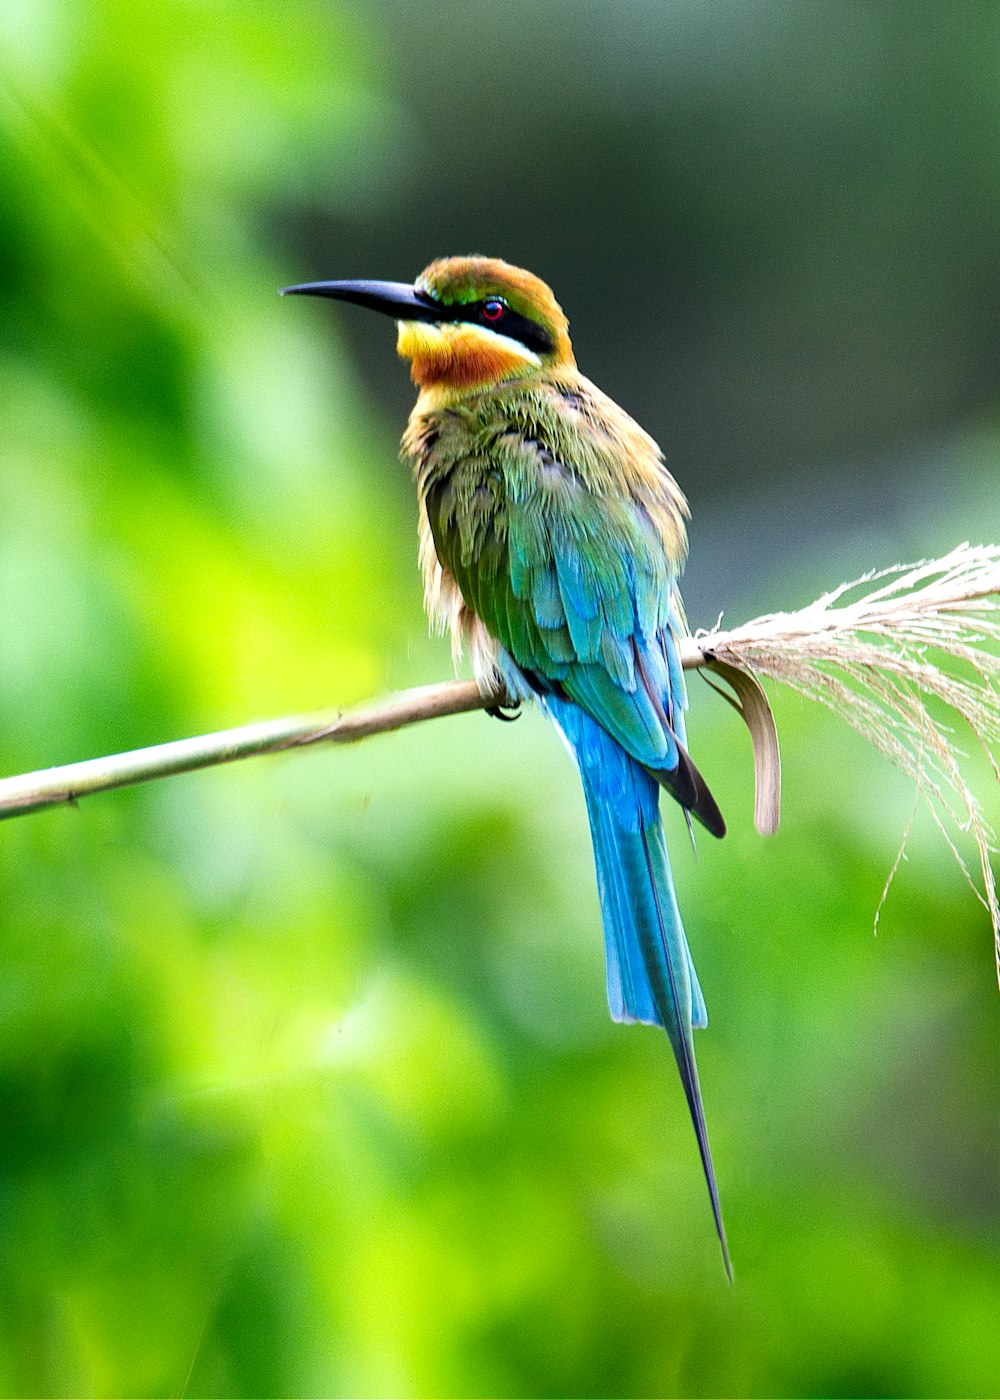 파란색, 노란색, 초록색의 긴 부리 새가 낮에 나뭇가지에 매달려 있습니다